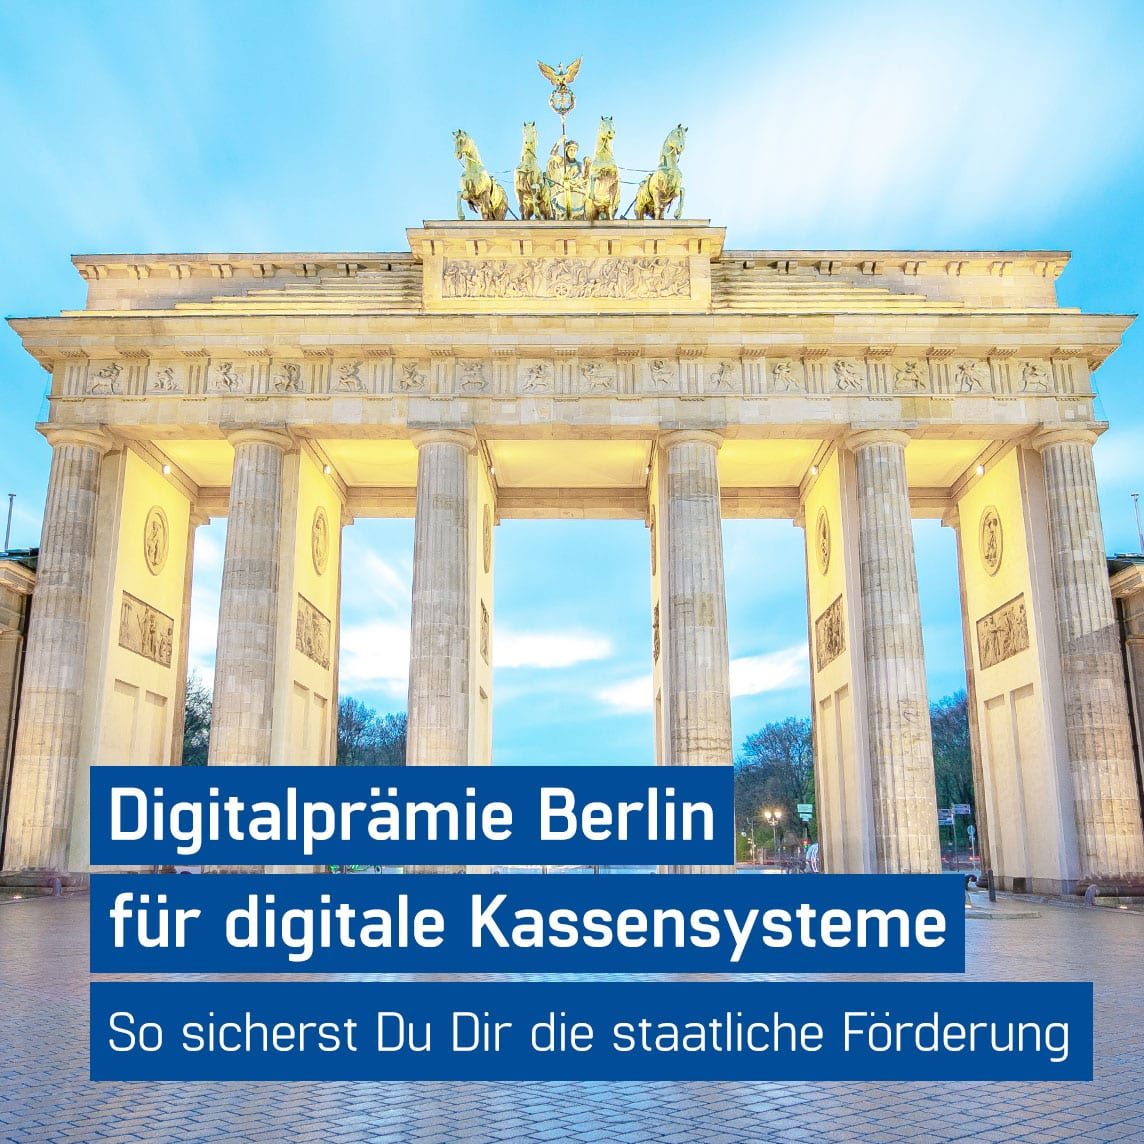 Digitalprämie Berlin - mit GastroSoft 50% Förderung auf digitales Kassensystem sichern